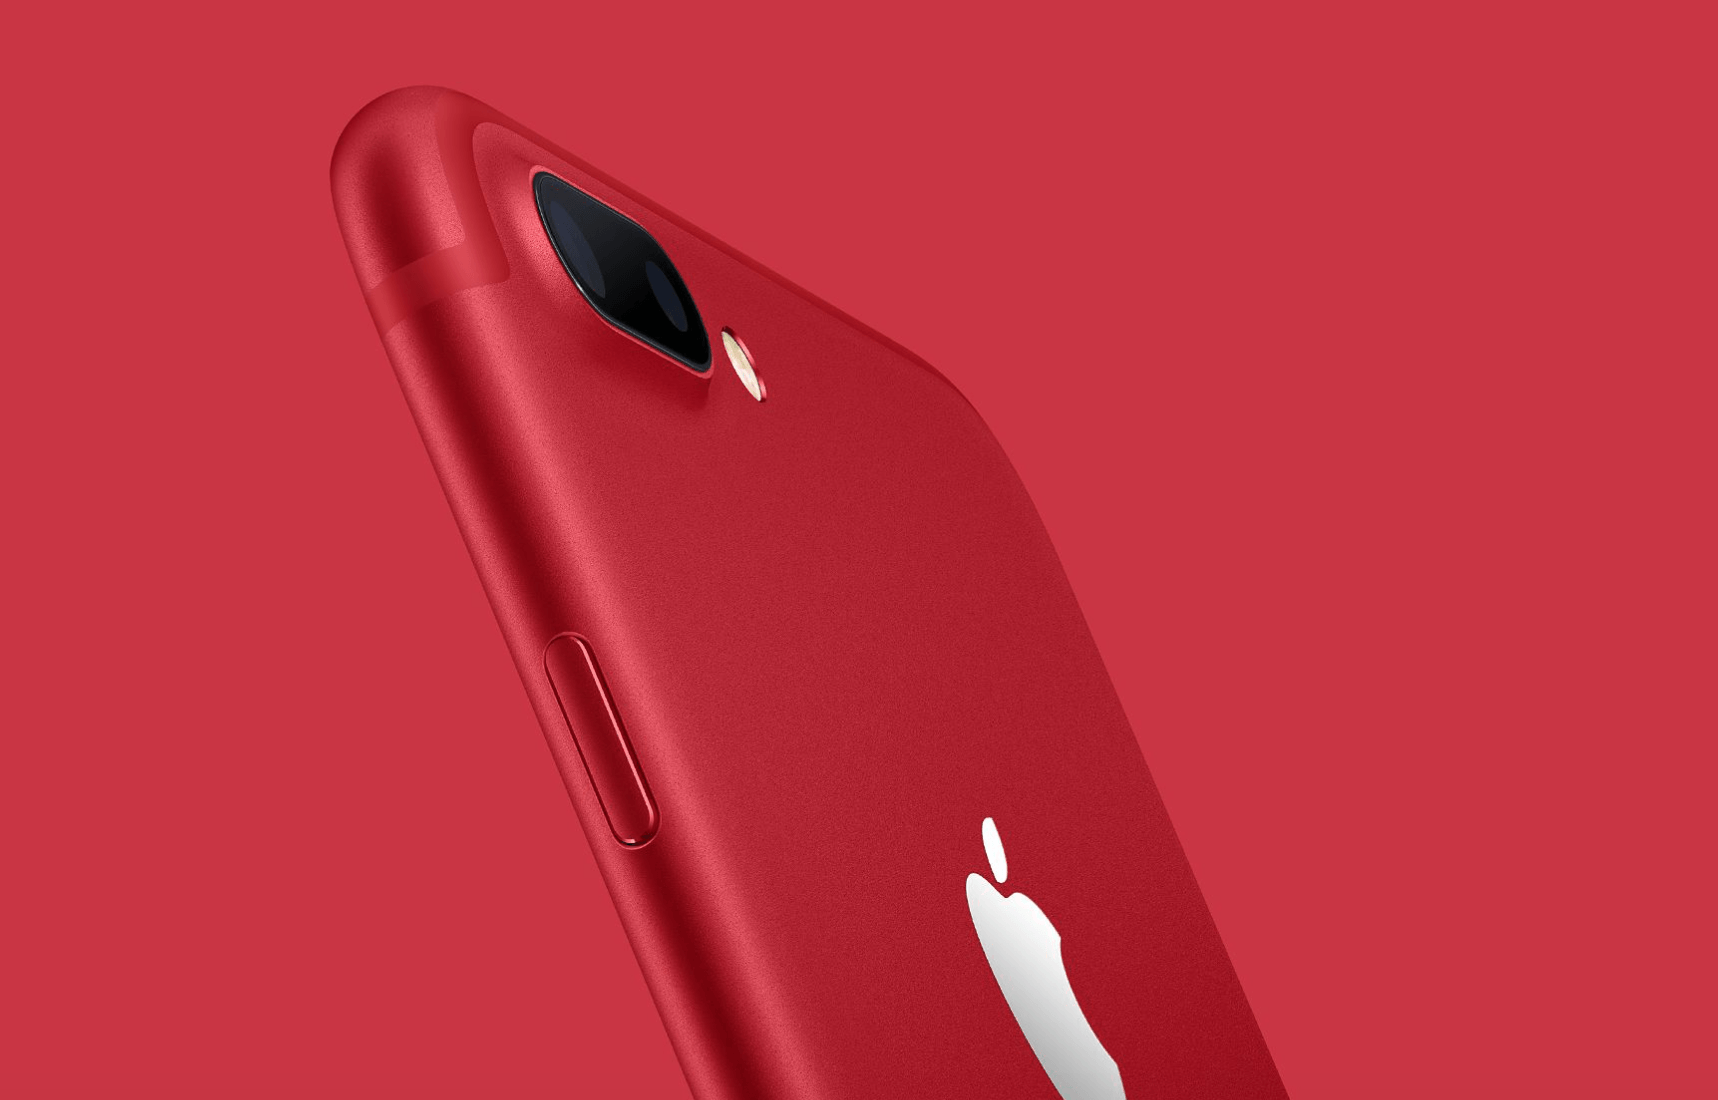 3 ค่ายมือถือเตรียมนำ iPhone 7/7 Plus สีแดงเข้ามาจำหน่ายเร็วๆ นี้!